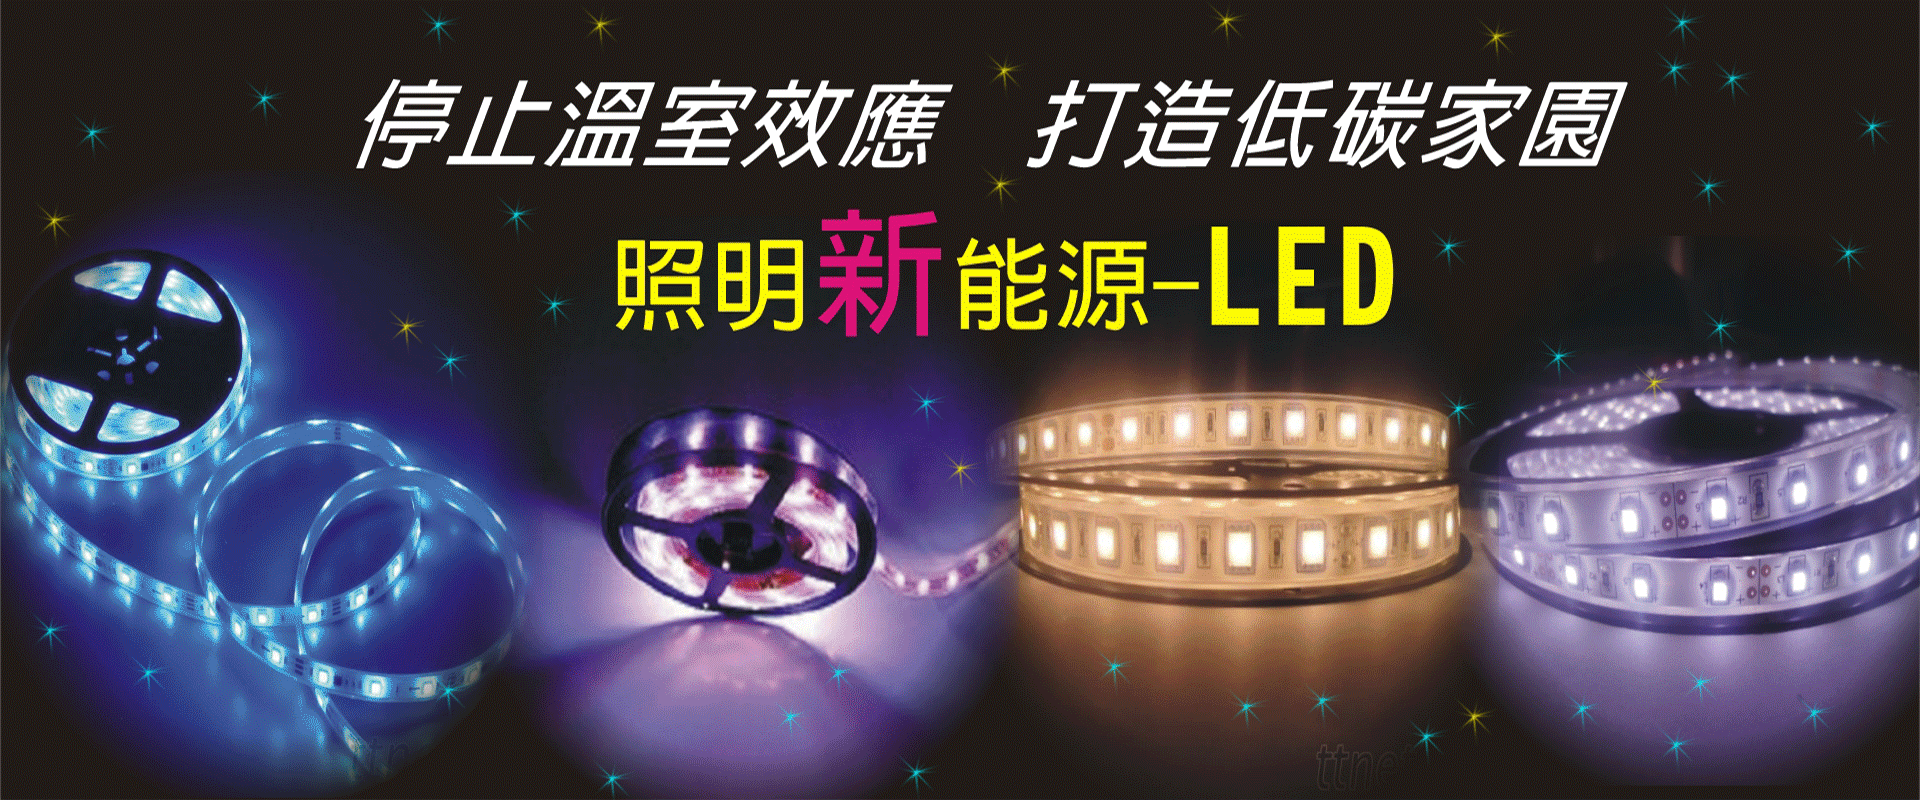 矽利康科技材料有限公司 - LED燈條,LED防水軟燈條,LED燈用控制器